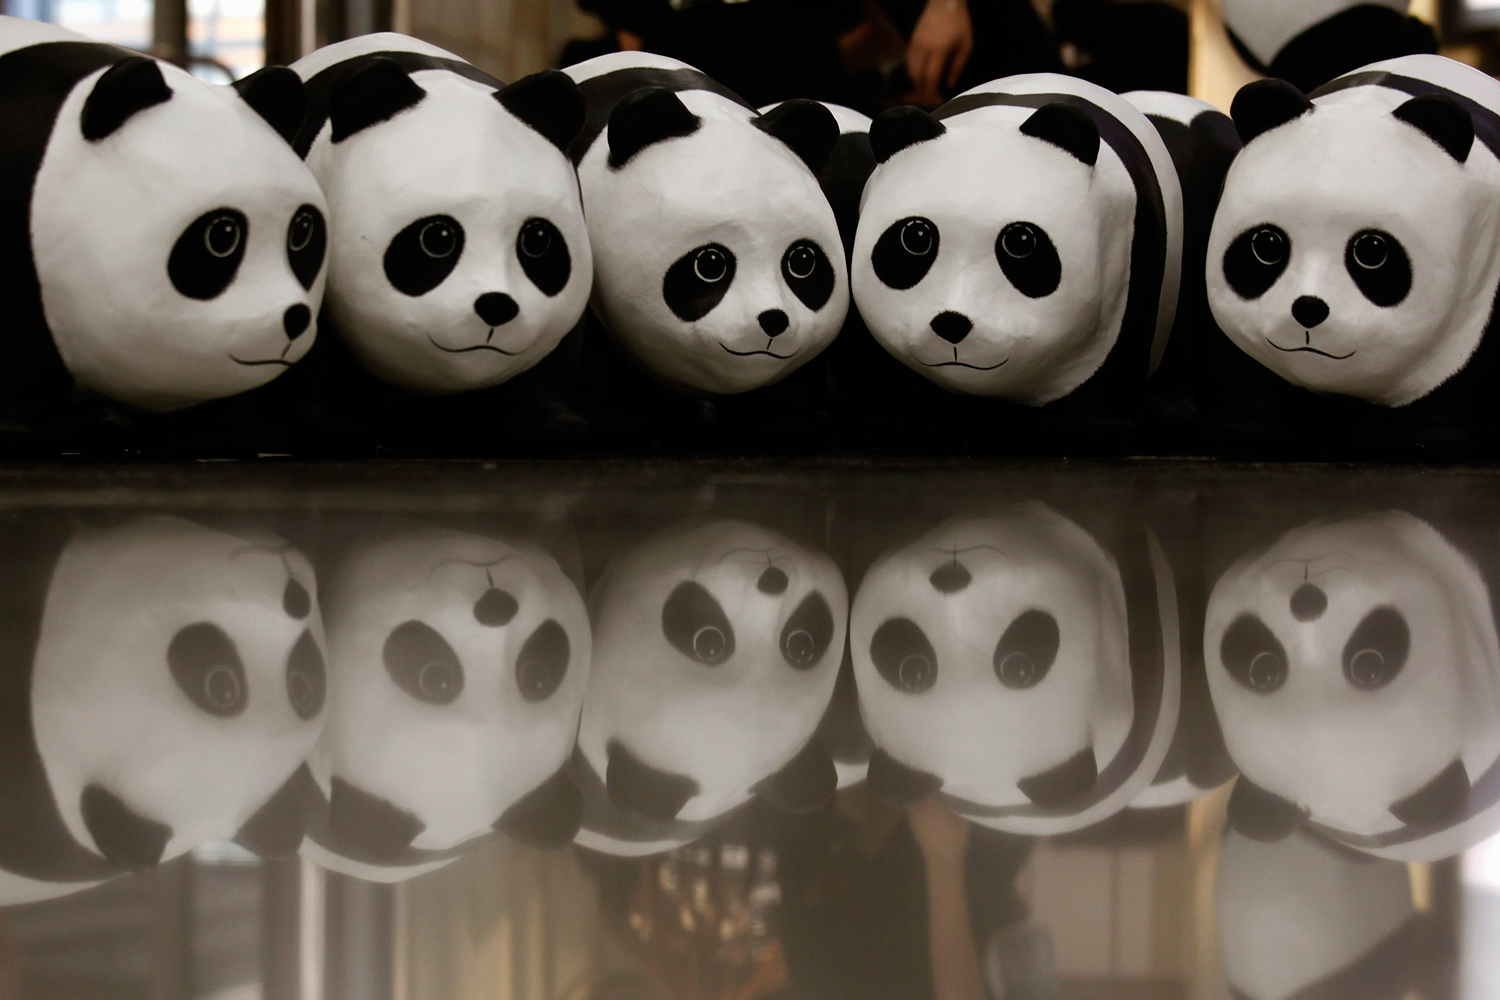 Los 1.600 pandas de papel del artista Paulo Grangeon aterrizan en el aeropuerto de Hong Kong